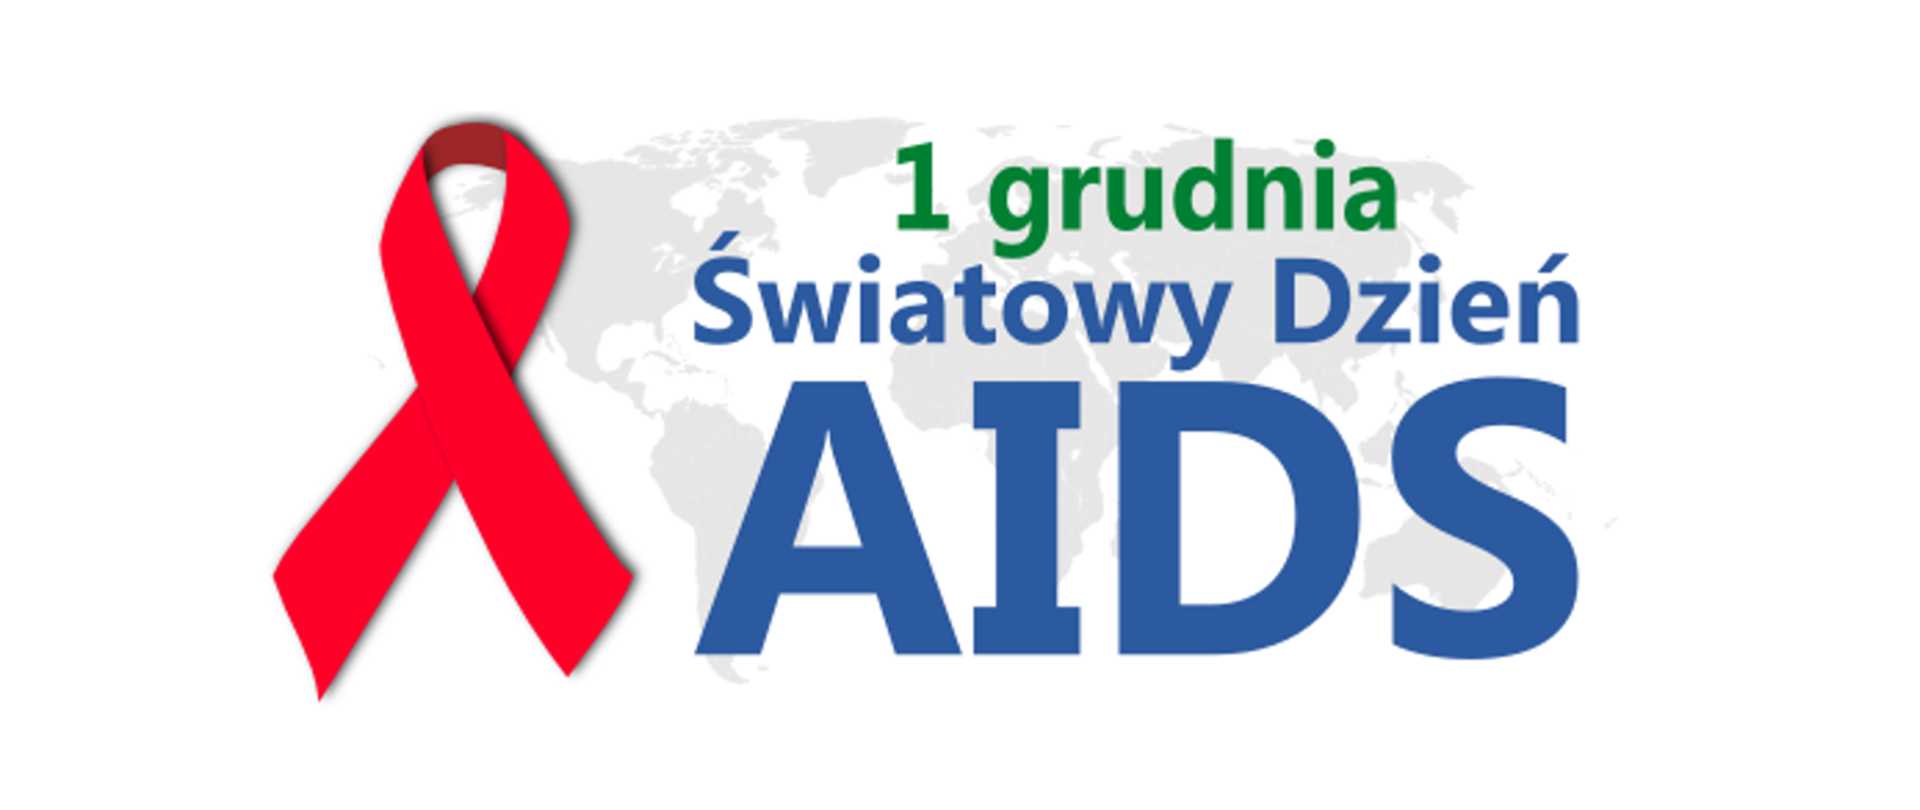 Na tle szarej mapy całego świata narysowana jest czerwona kokardka - symbol solidaraności z ludźmi chorymi na HIV/AIDS. Obok widnieje napis: 1 grudnia Światowy Dzięń AIDS.